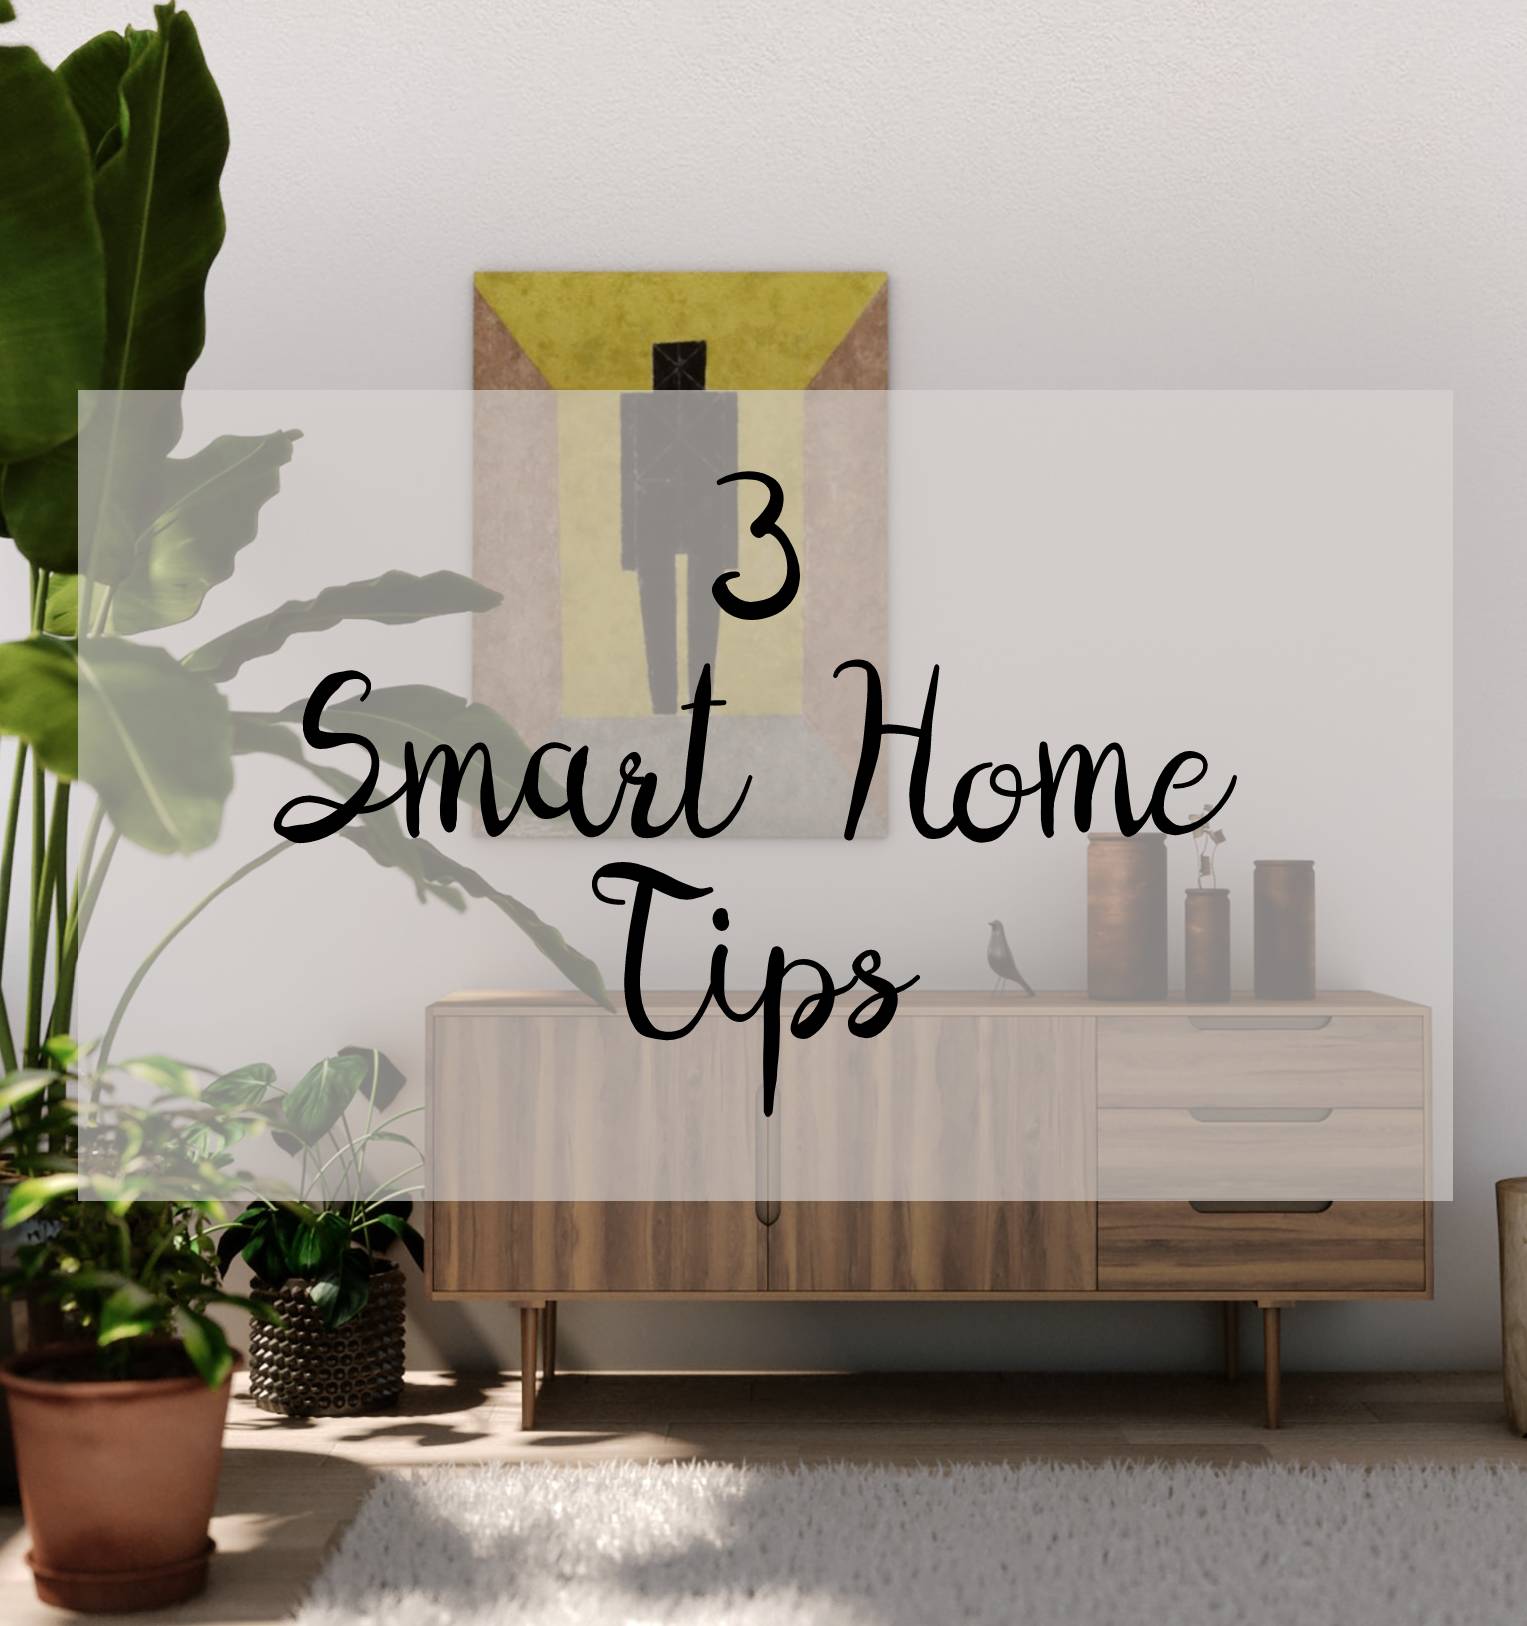 Smartzone Smart Home tips 